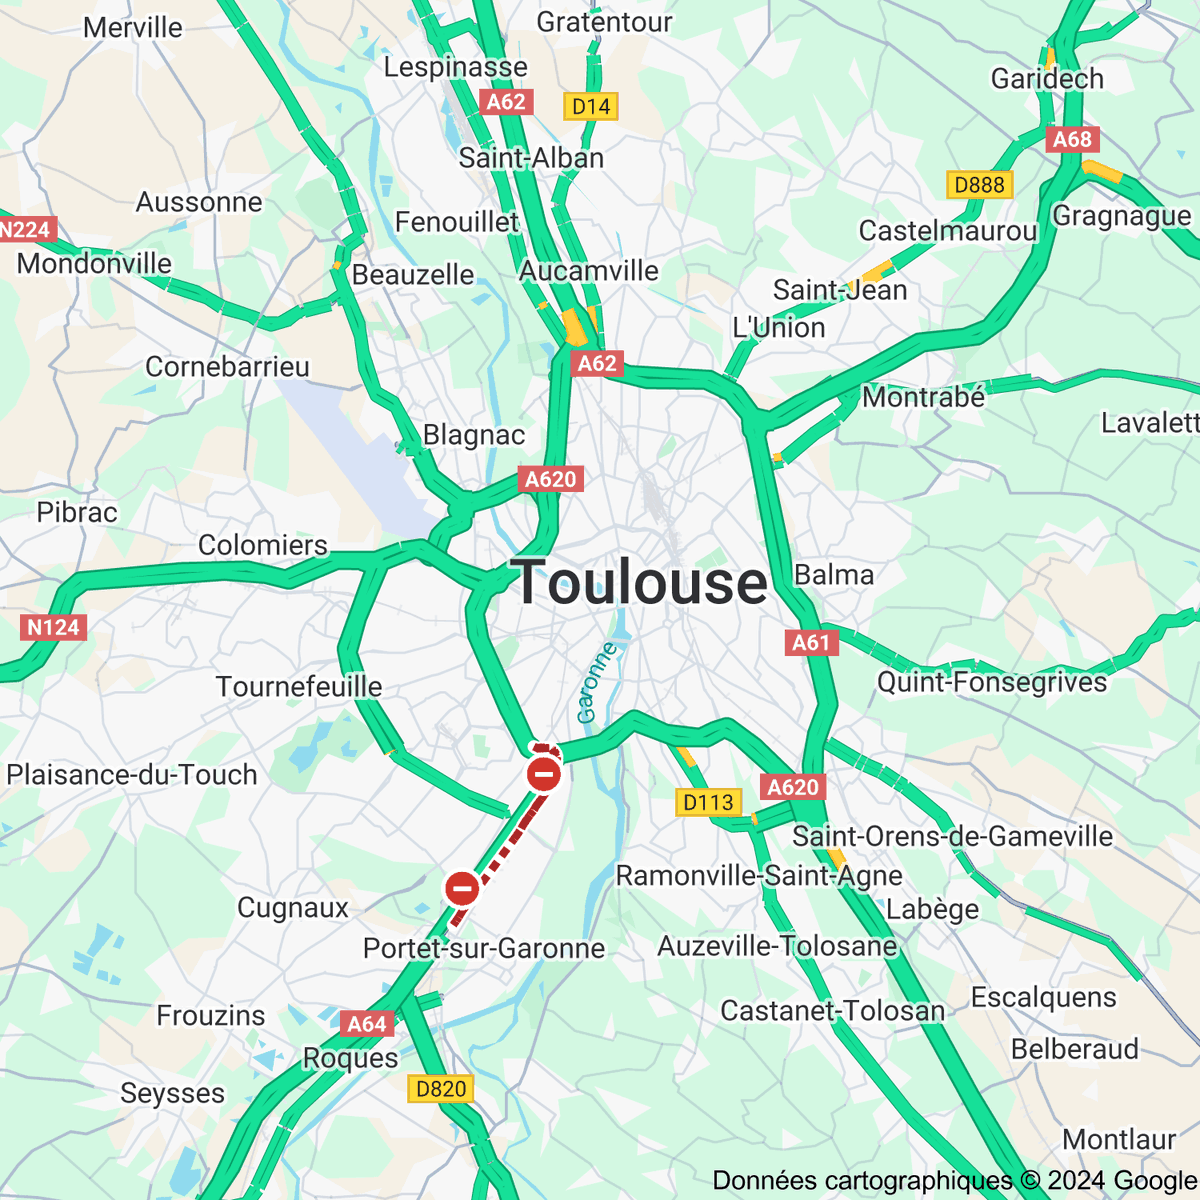 [FLASH 01:00] Trafic routier à Toulouse - toulousetrafic.com #Toulouse #ToulousePeriph #InfoTrafic